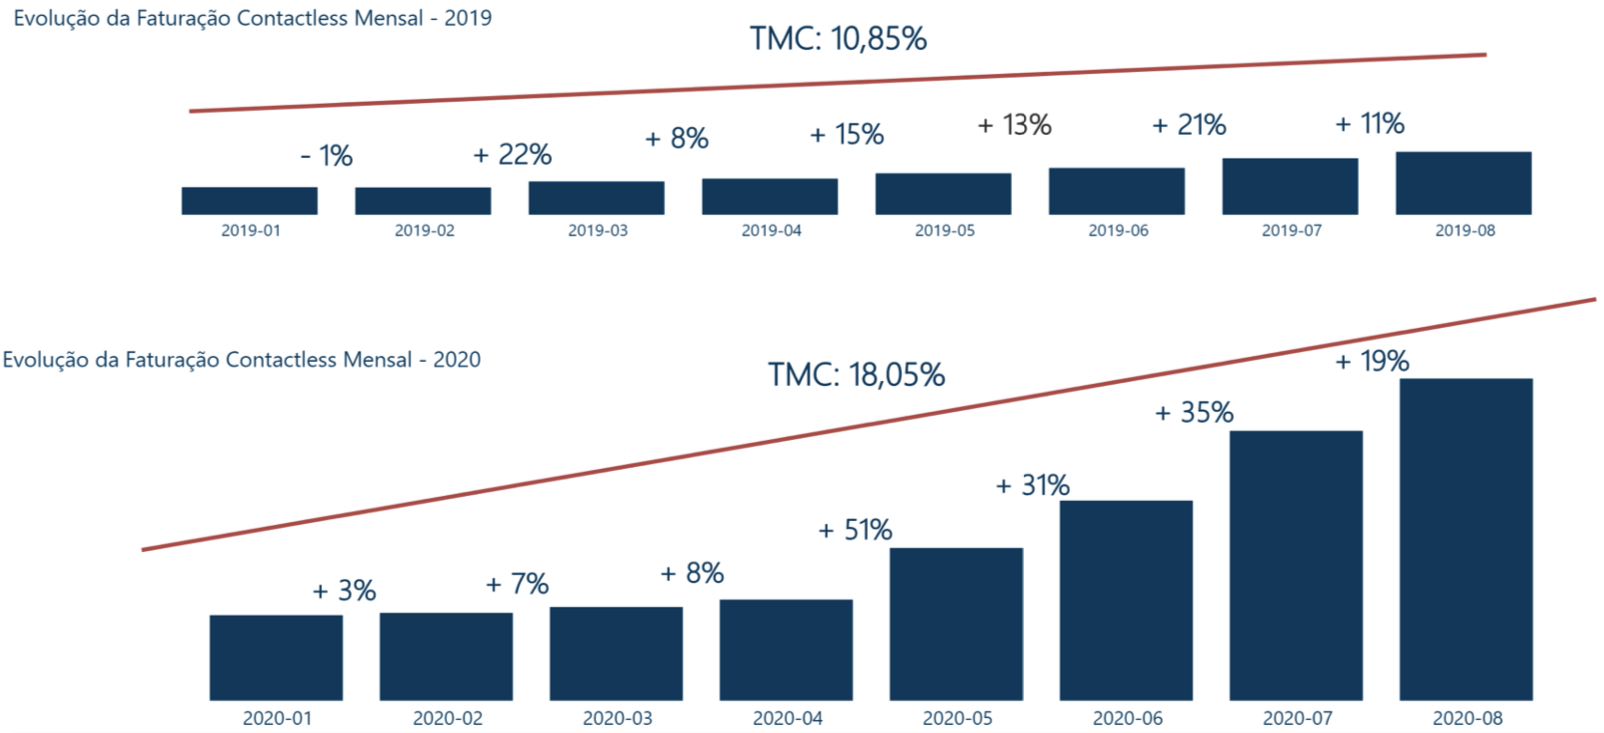 Evolução da Faturação Contactless 2020/2019 - Variação Mensal e Taxa Média de Crescimento (TMC)